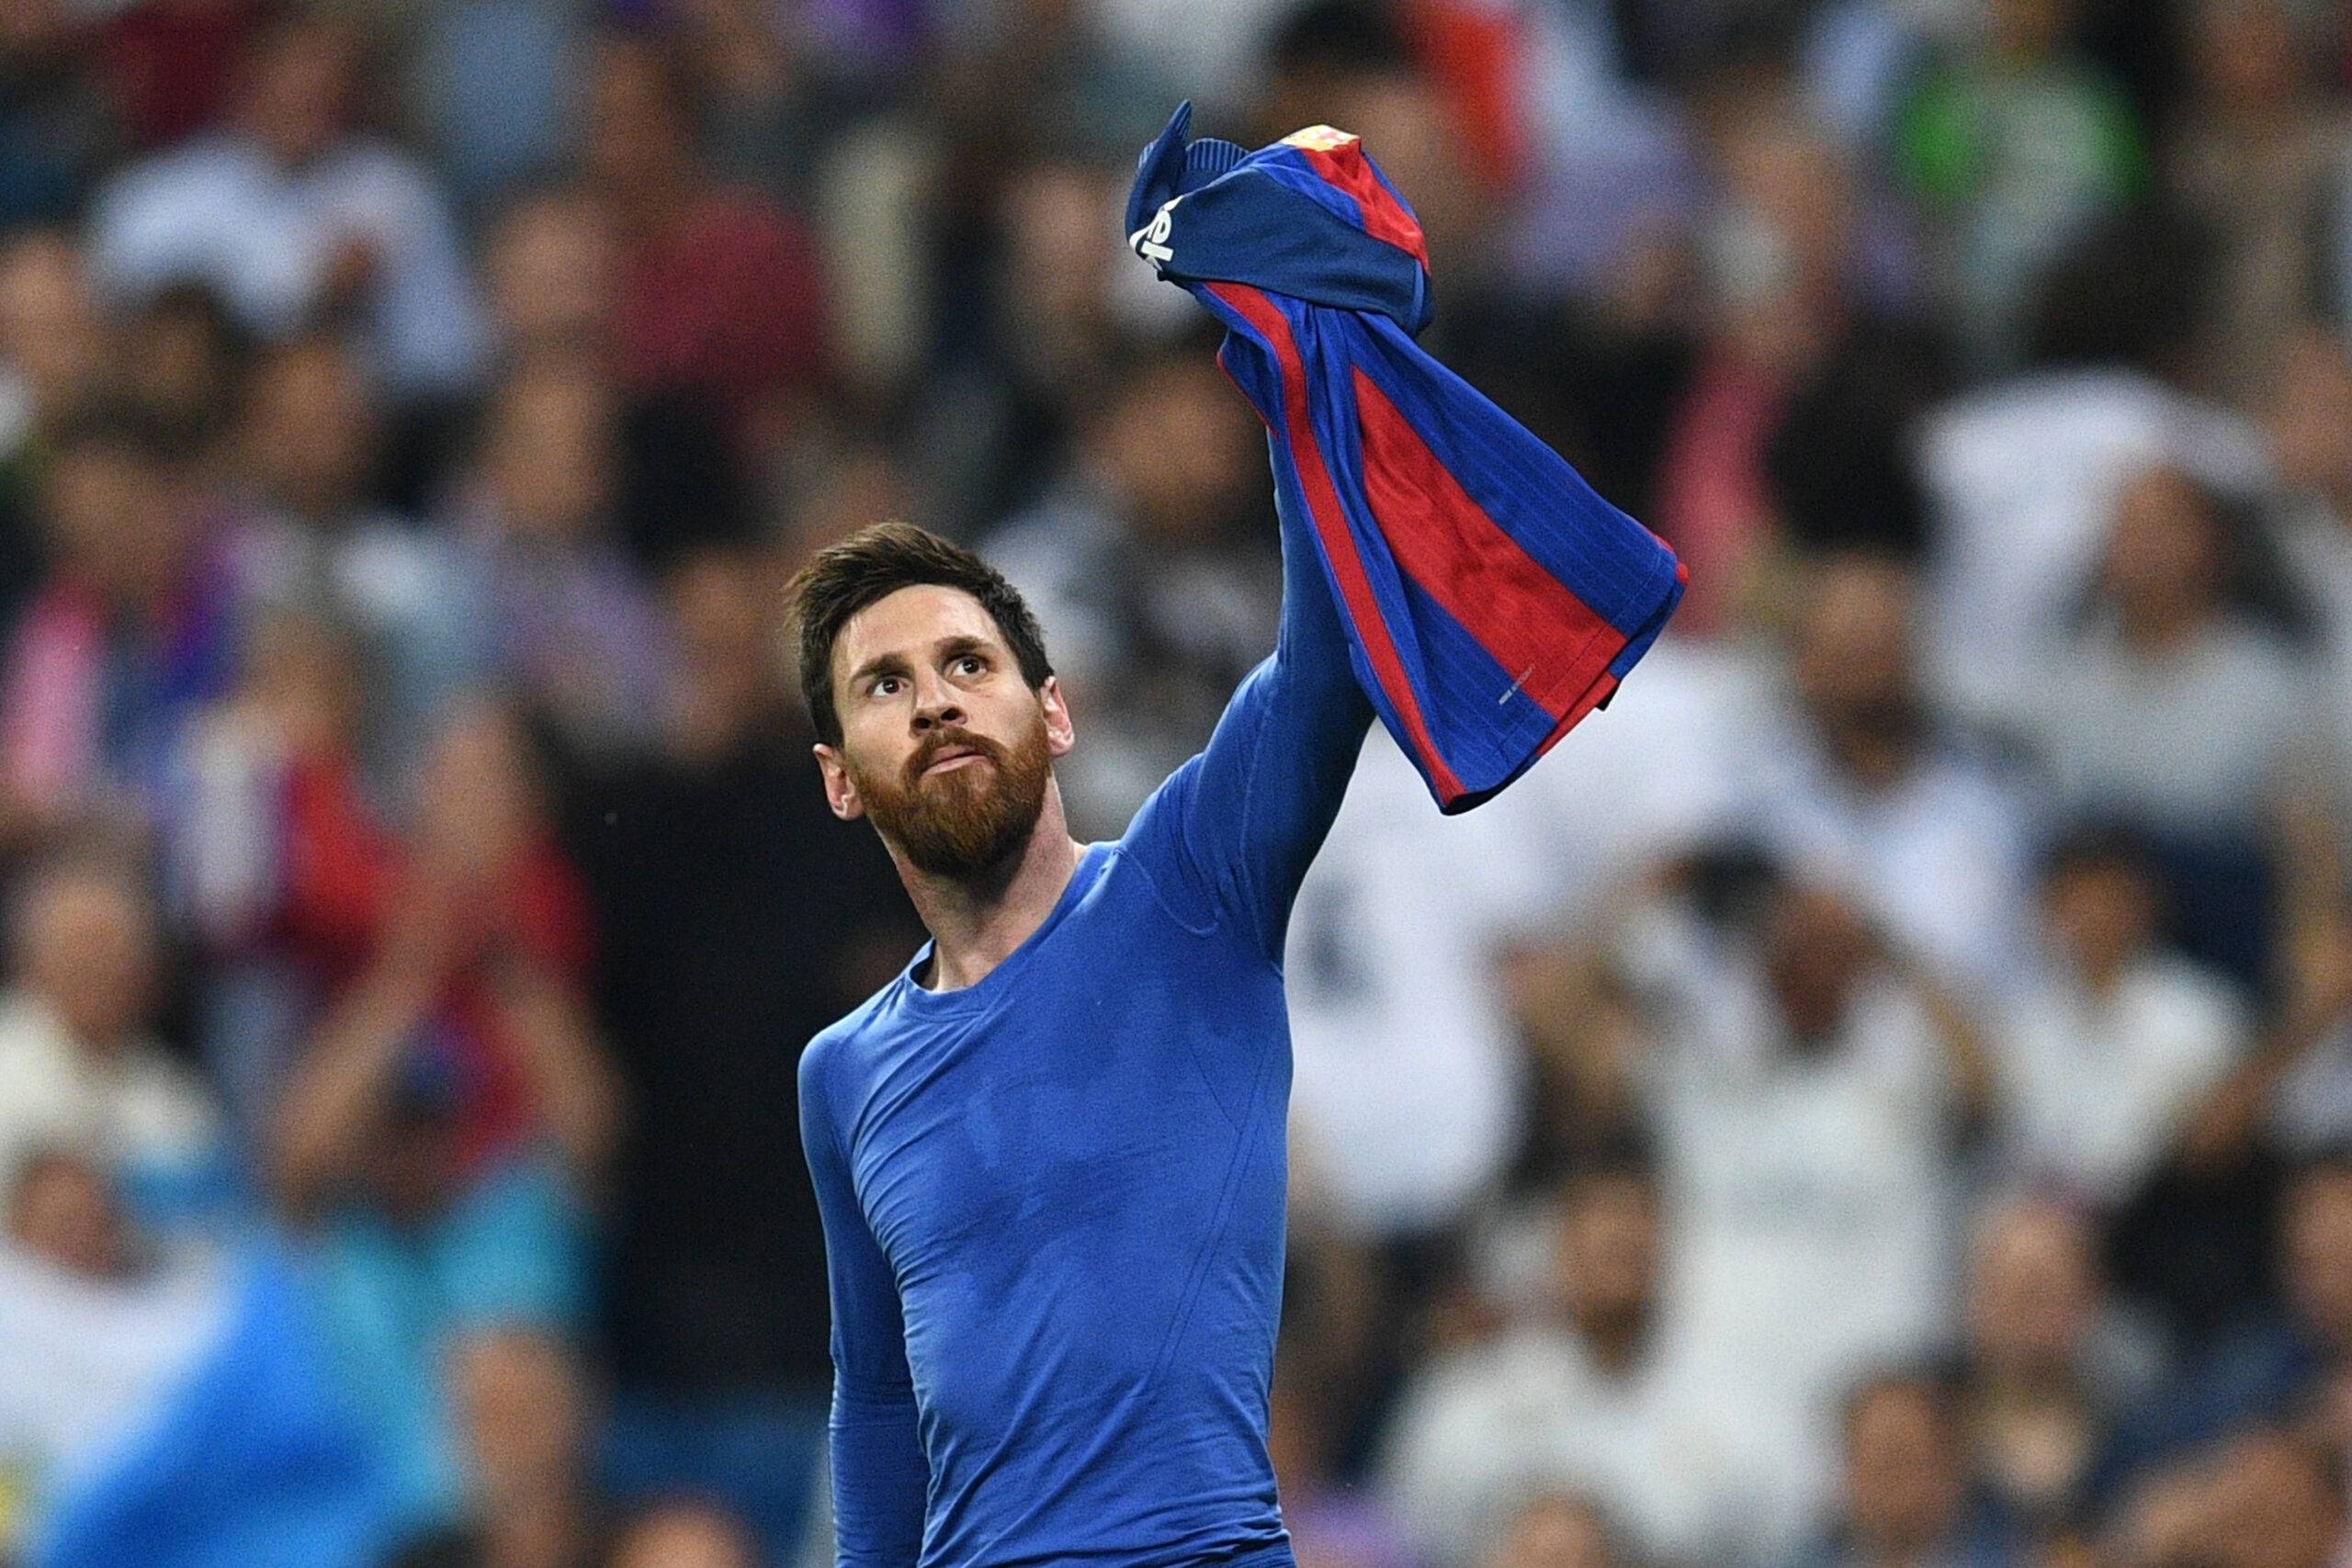 Messi raises shirt at Bernabeu